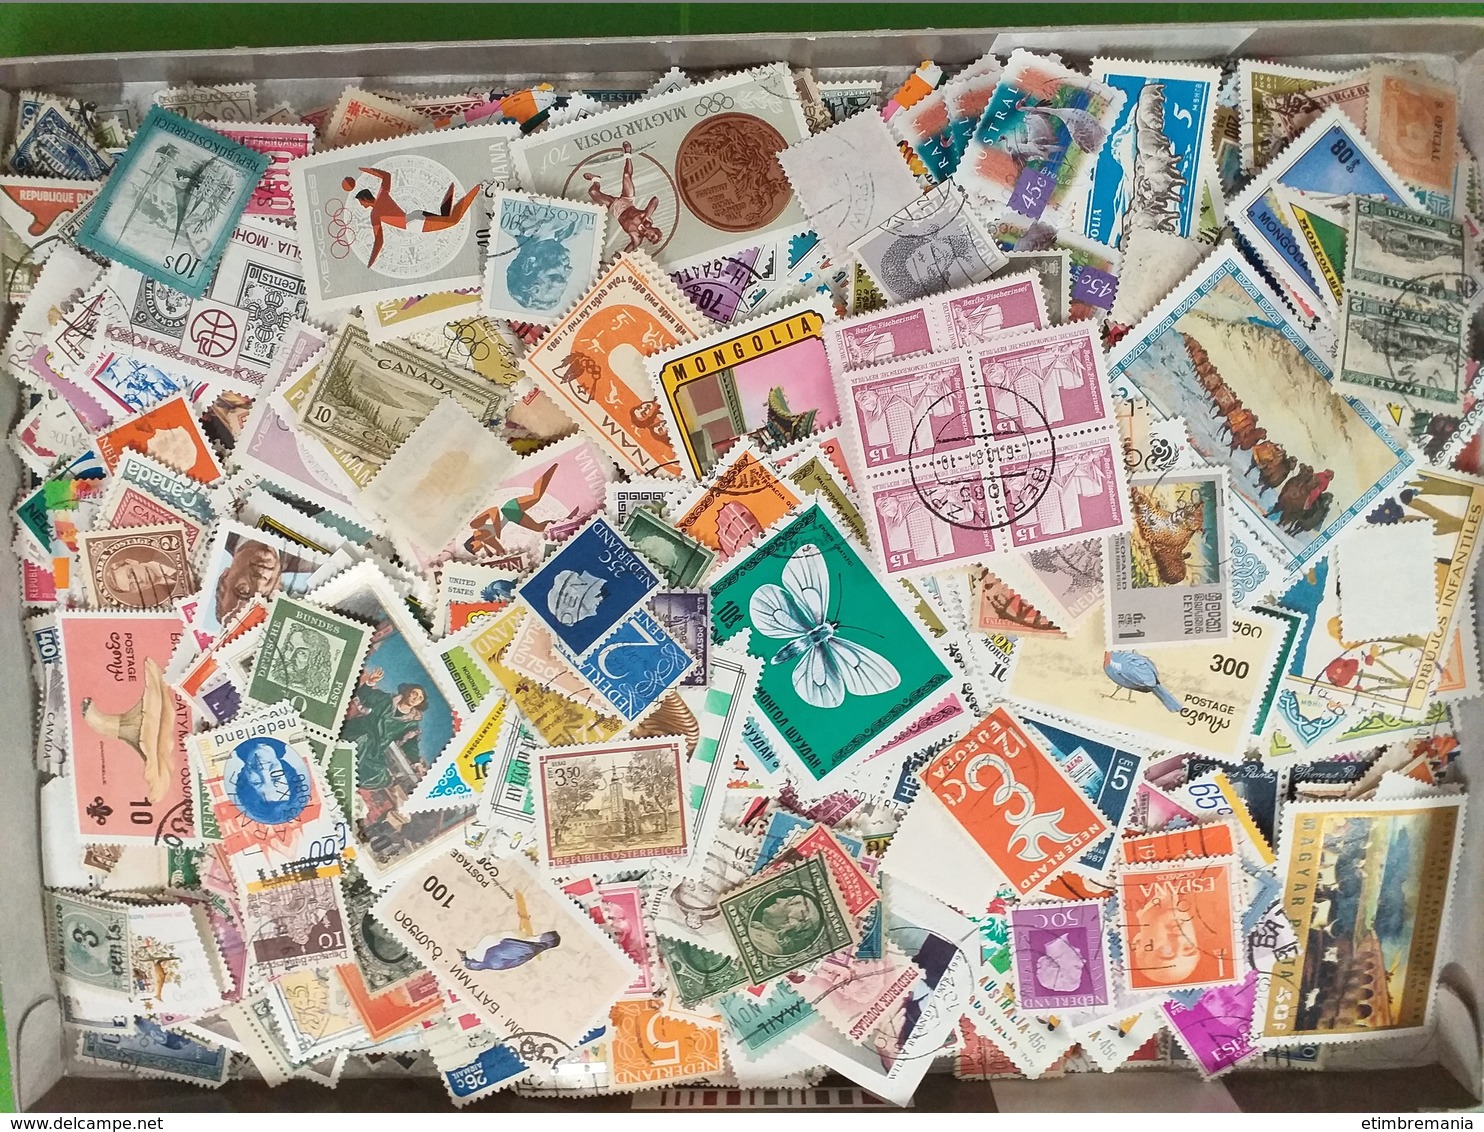 LOT N° e 83  MONDE un vrac de plus de 2000 timbres